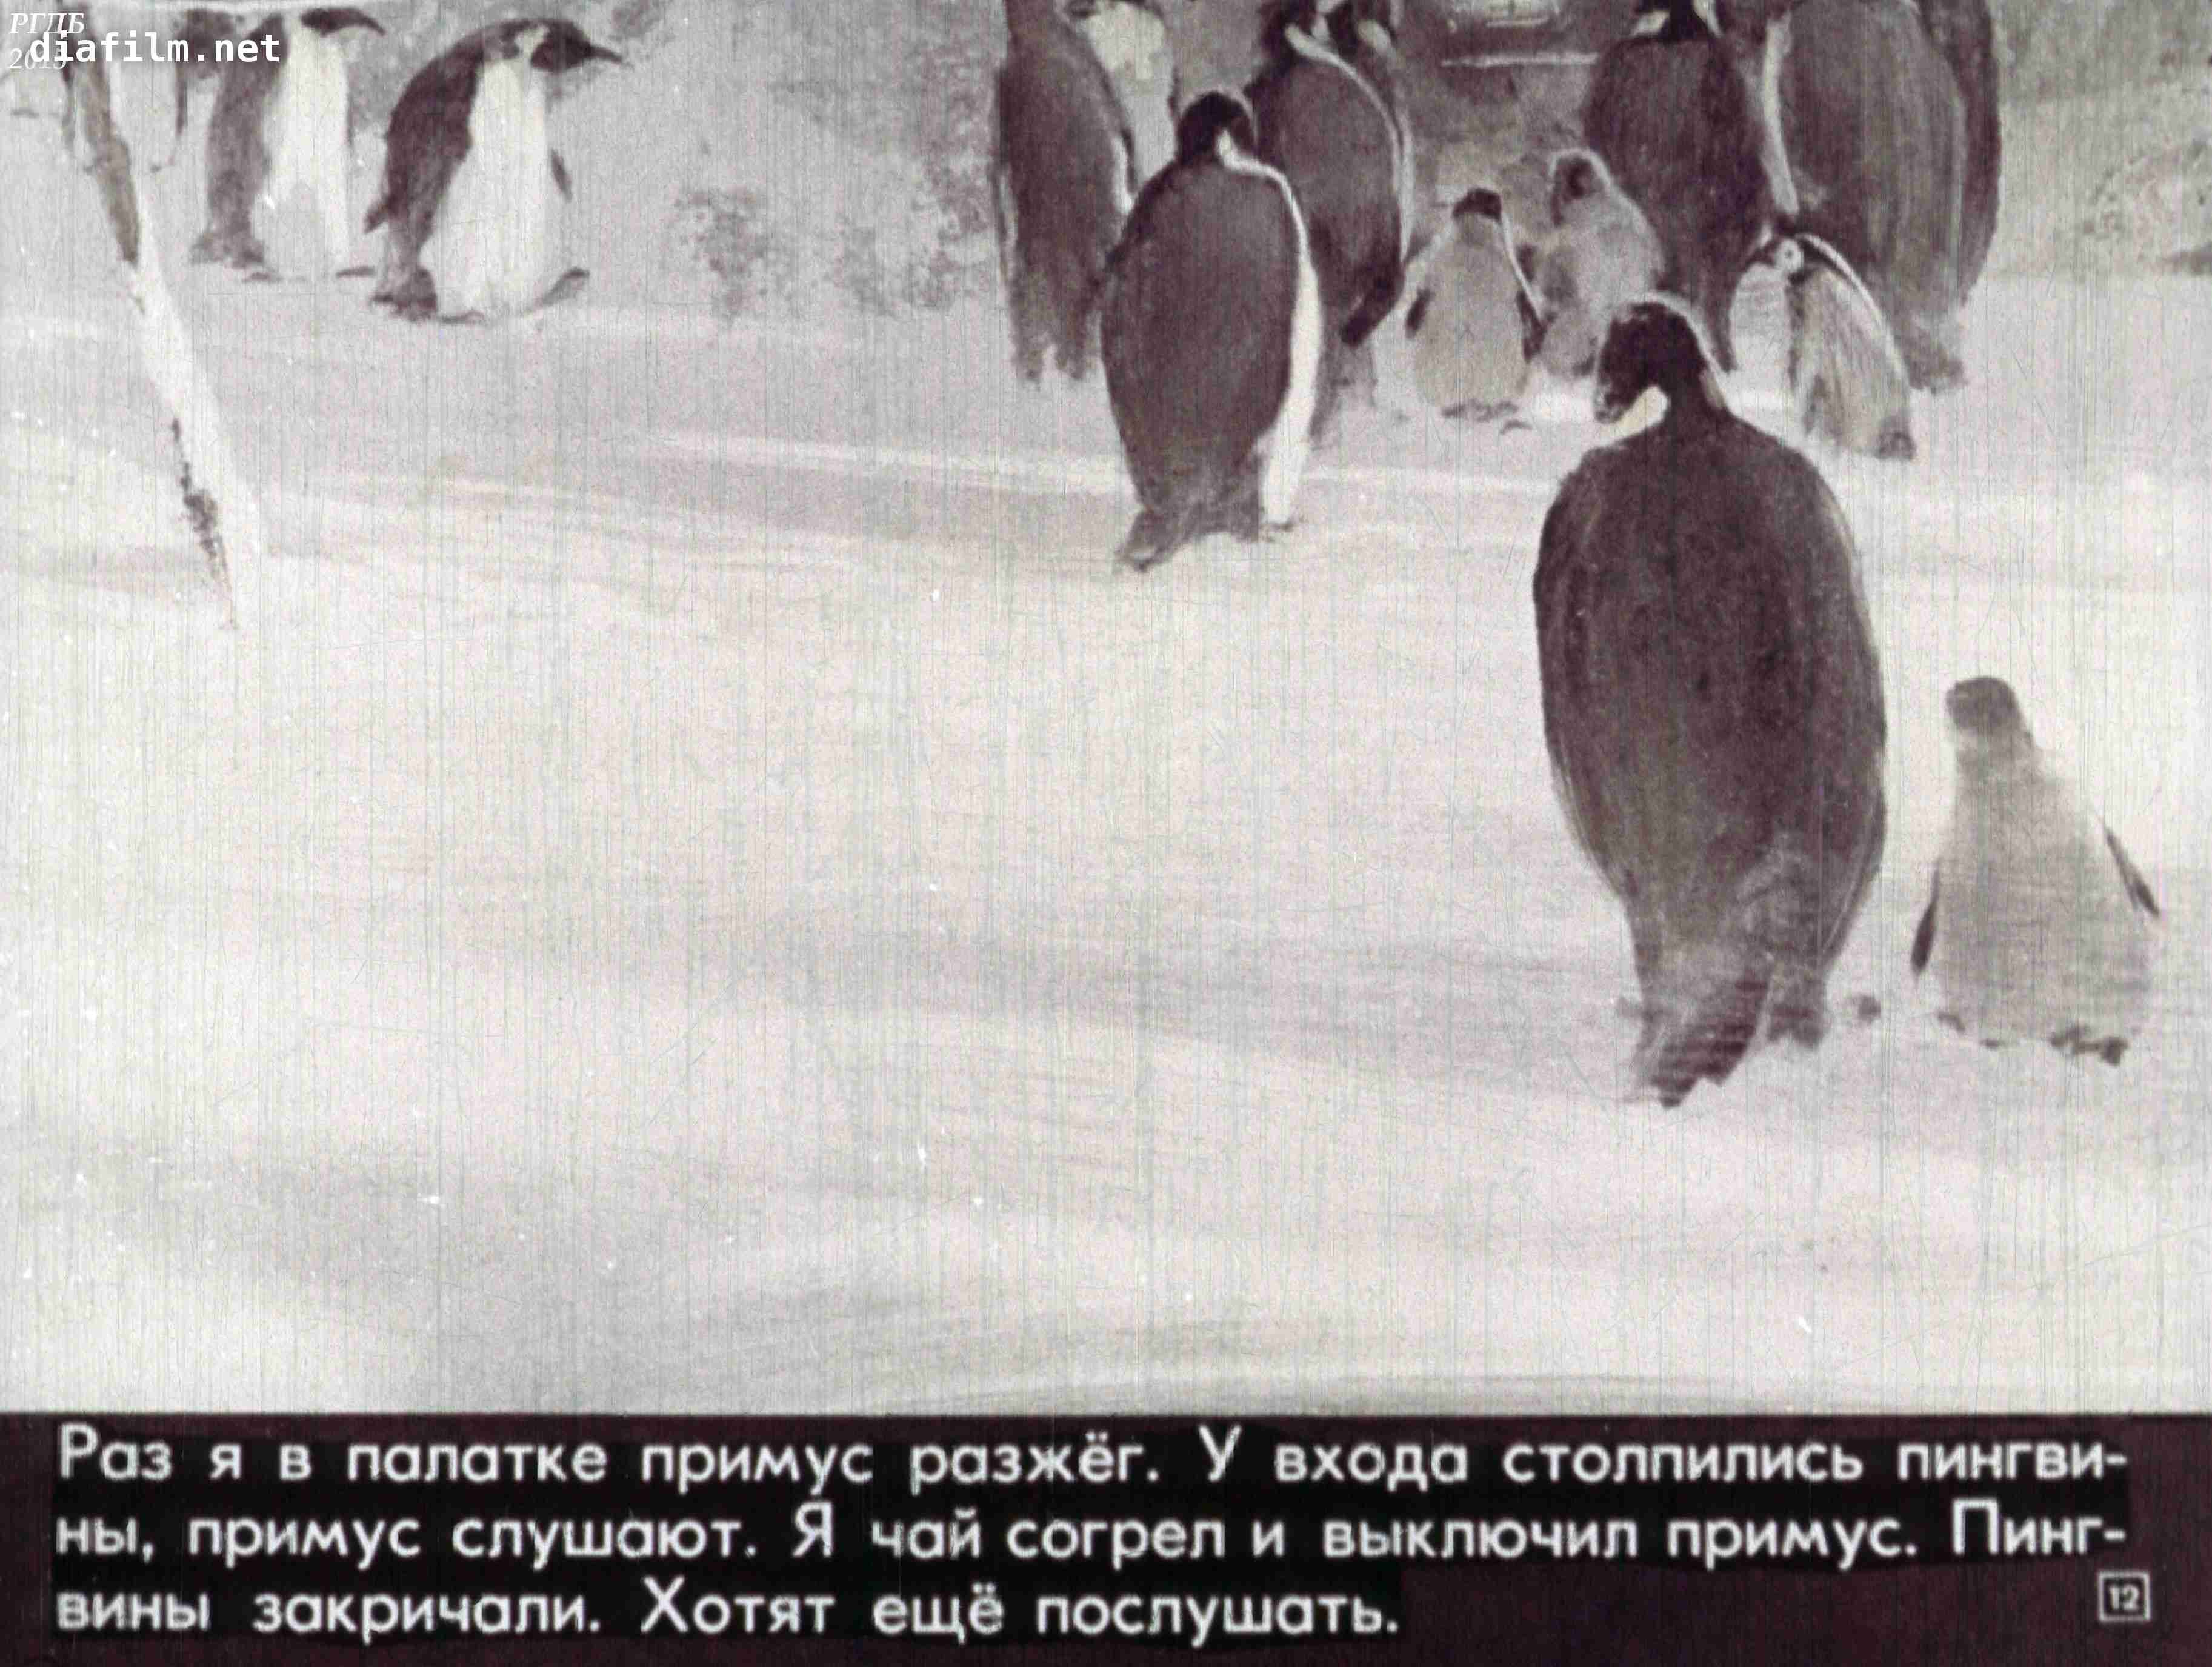 Пересказ рассказов про пингвинов старшая. Г. Снегирёв "про пингвинов" 11. Г Снегирева про пингвинов рассказ. Г Снегирев про пингвинов иллюстрации. Текст рассказов Снегирева про пингвинов.